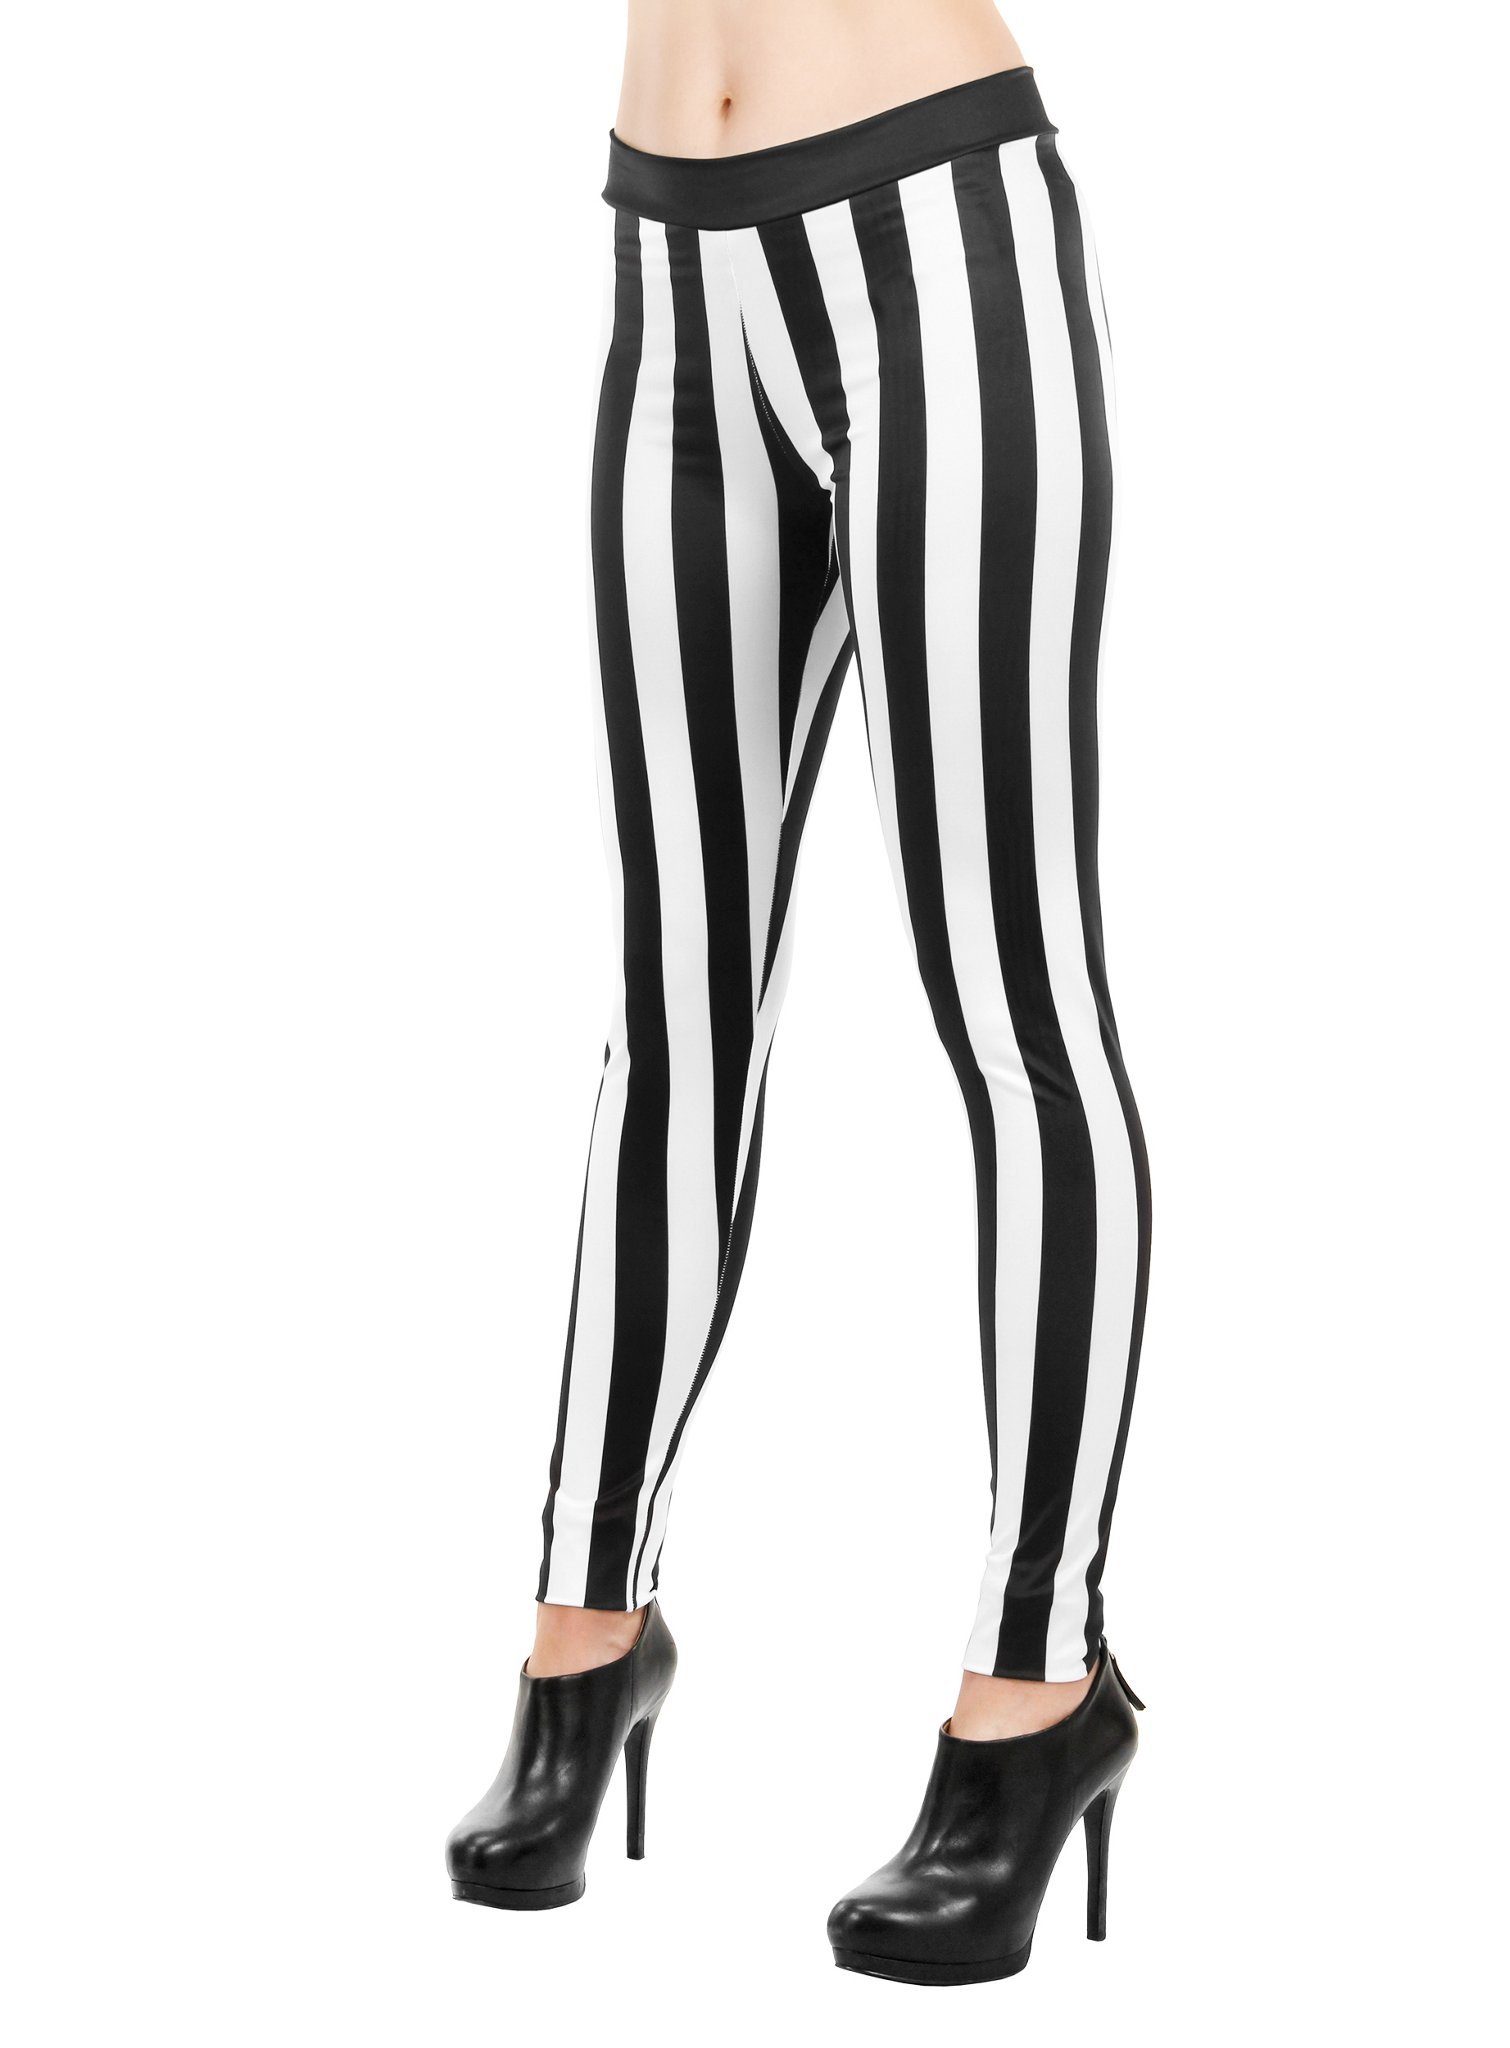 Elope Kostüm Leggings gestreift schwarz-weiß, Streifen machen Dich  wahlweise schlank, zur Piratin oder zur Pantomimin